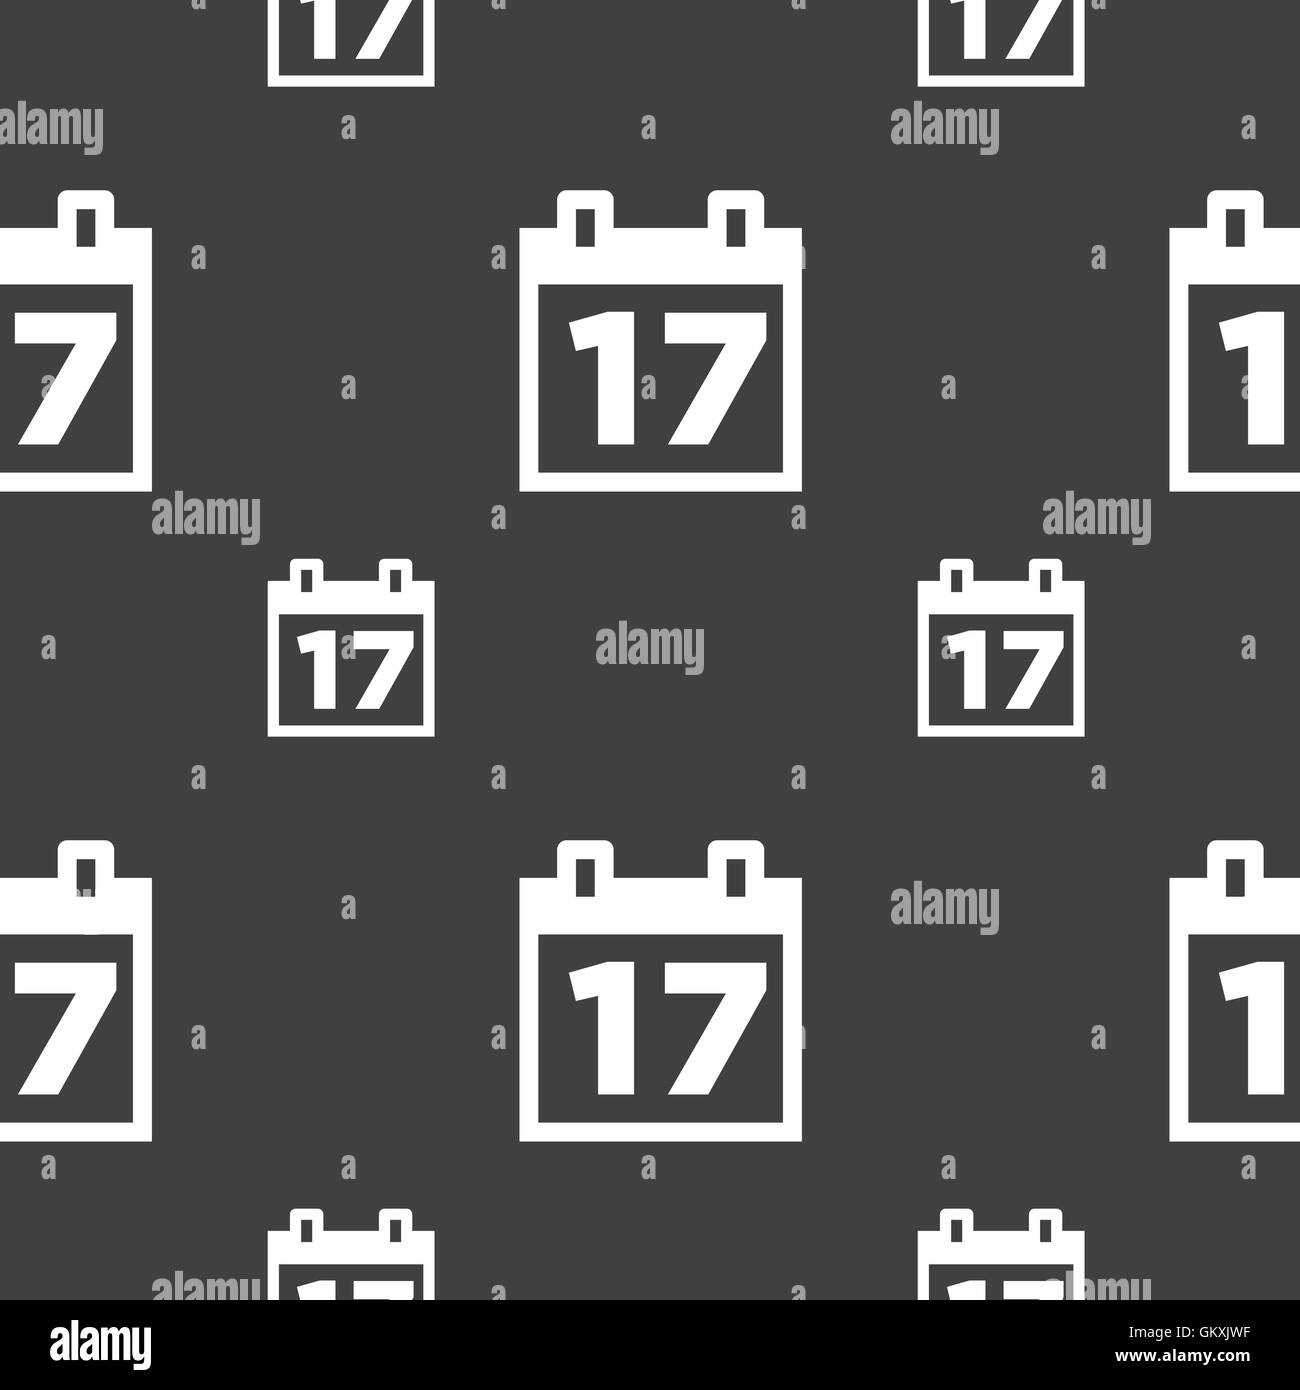 Kalender, Datum oder Ereignis Erinnerung Symbol Zeichen. Nahtlose Muster auf einem grauen Hintergrund. Vektor Stock Vektor